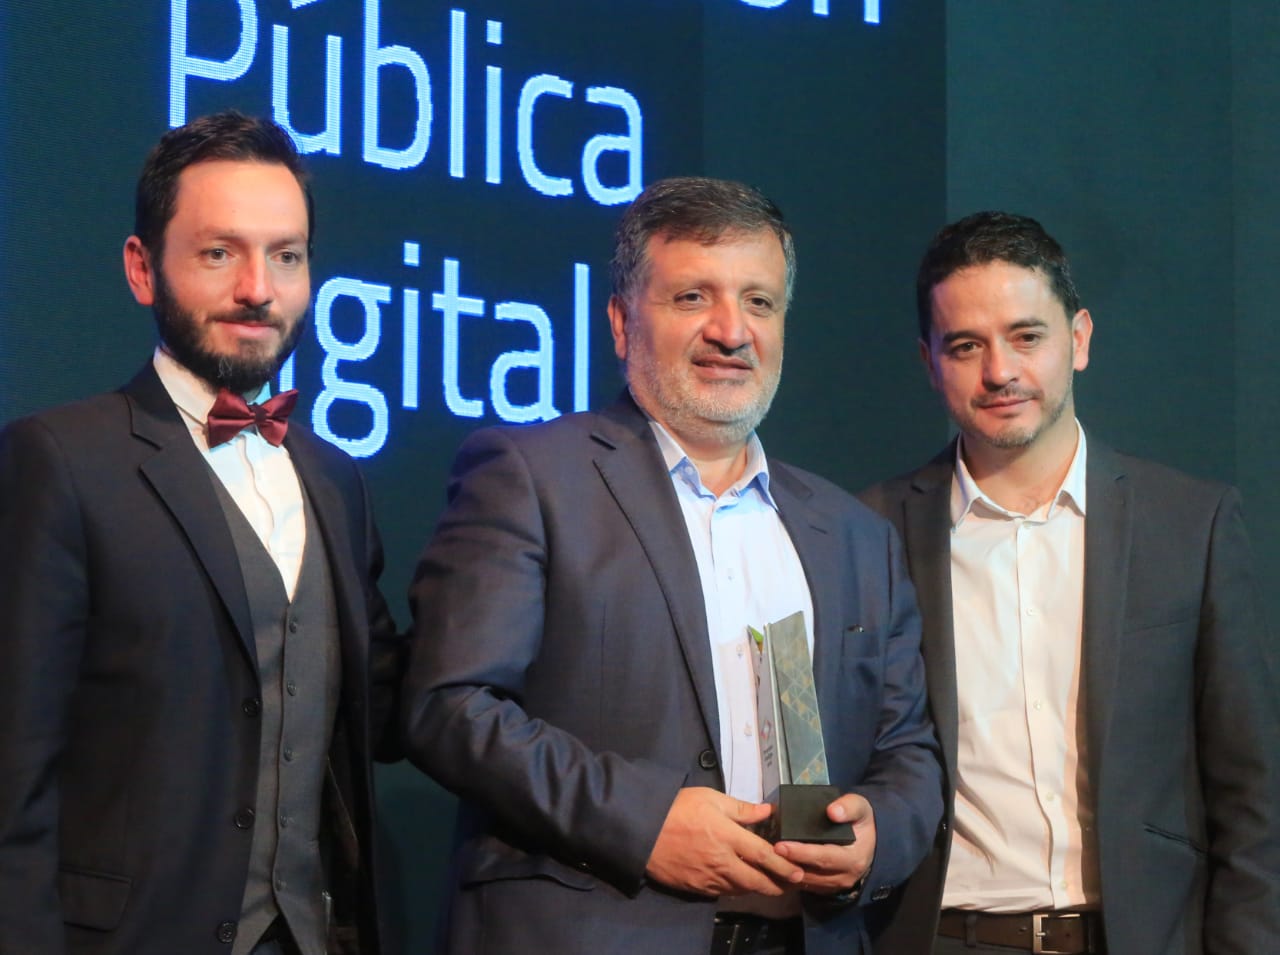 Gobernación de Cundinamarca ocupa primer lugar en los premios Índigo Gobierno Digital del MinTIC